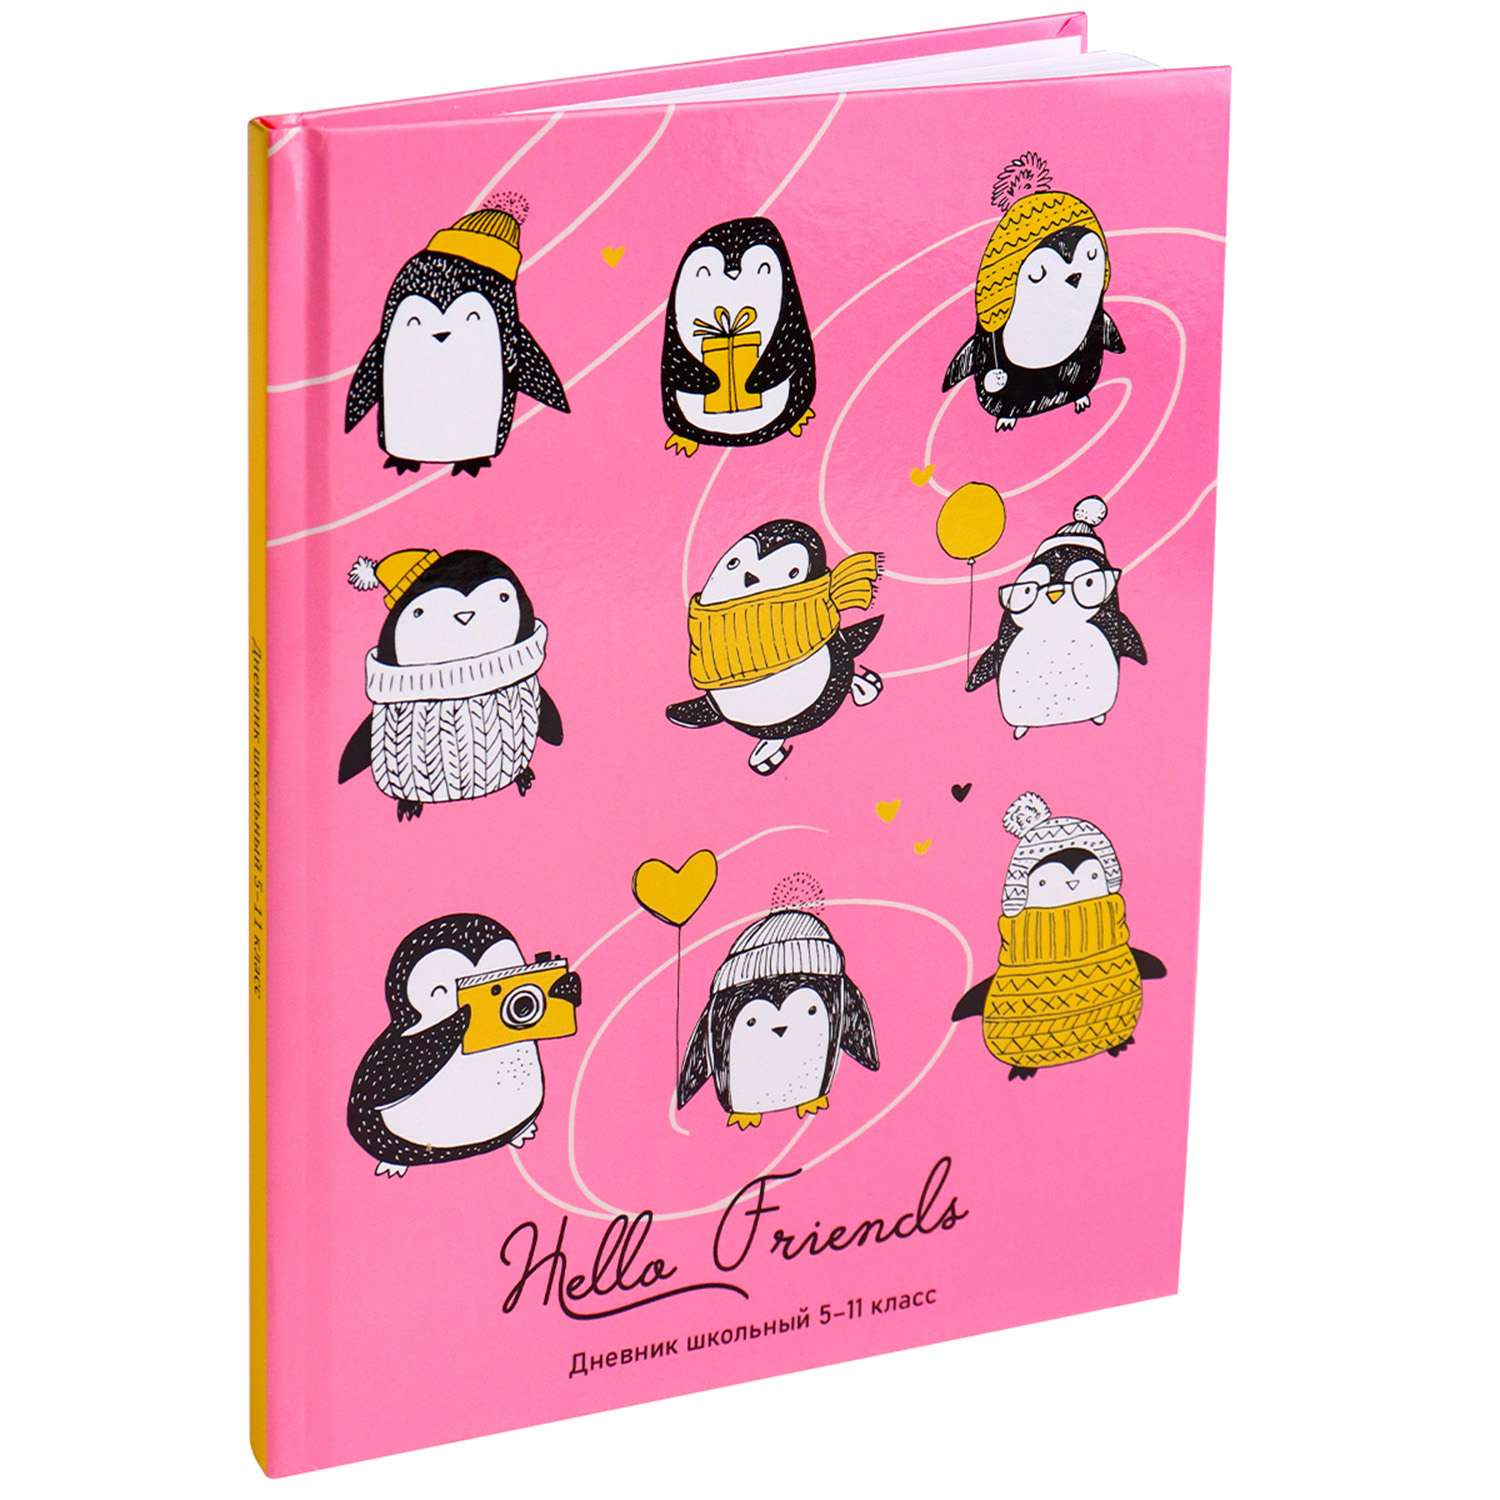 Дневник школьный Prof-Press Милые пингвинчики 48 листов 5-11 классы - фото 1